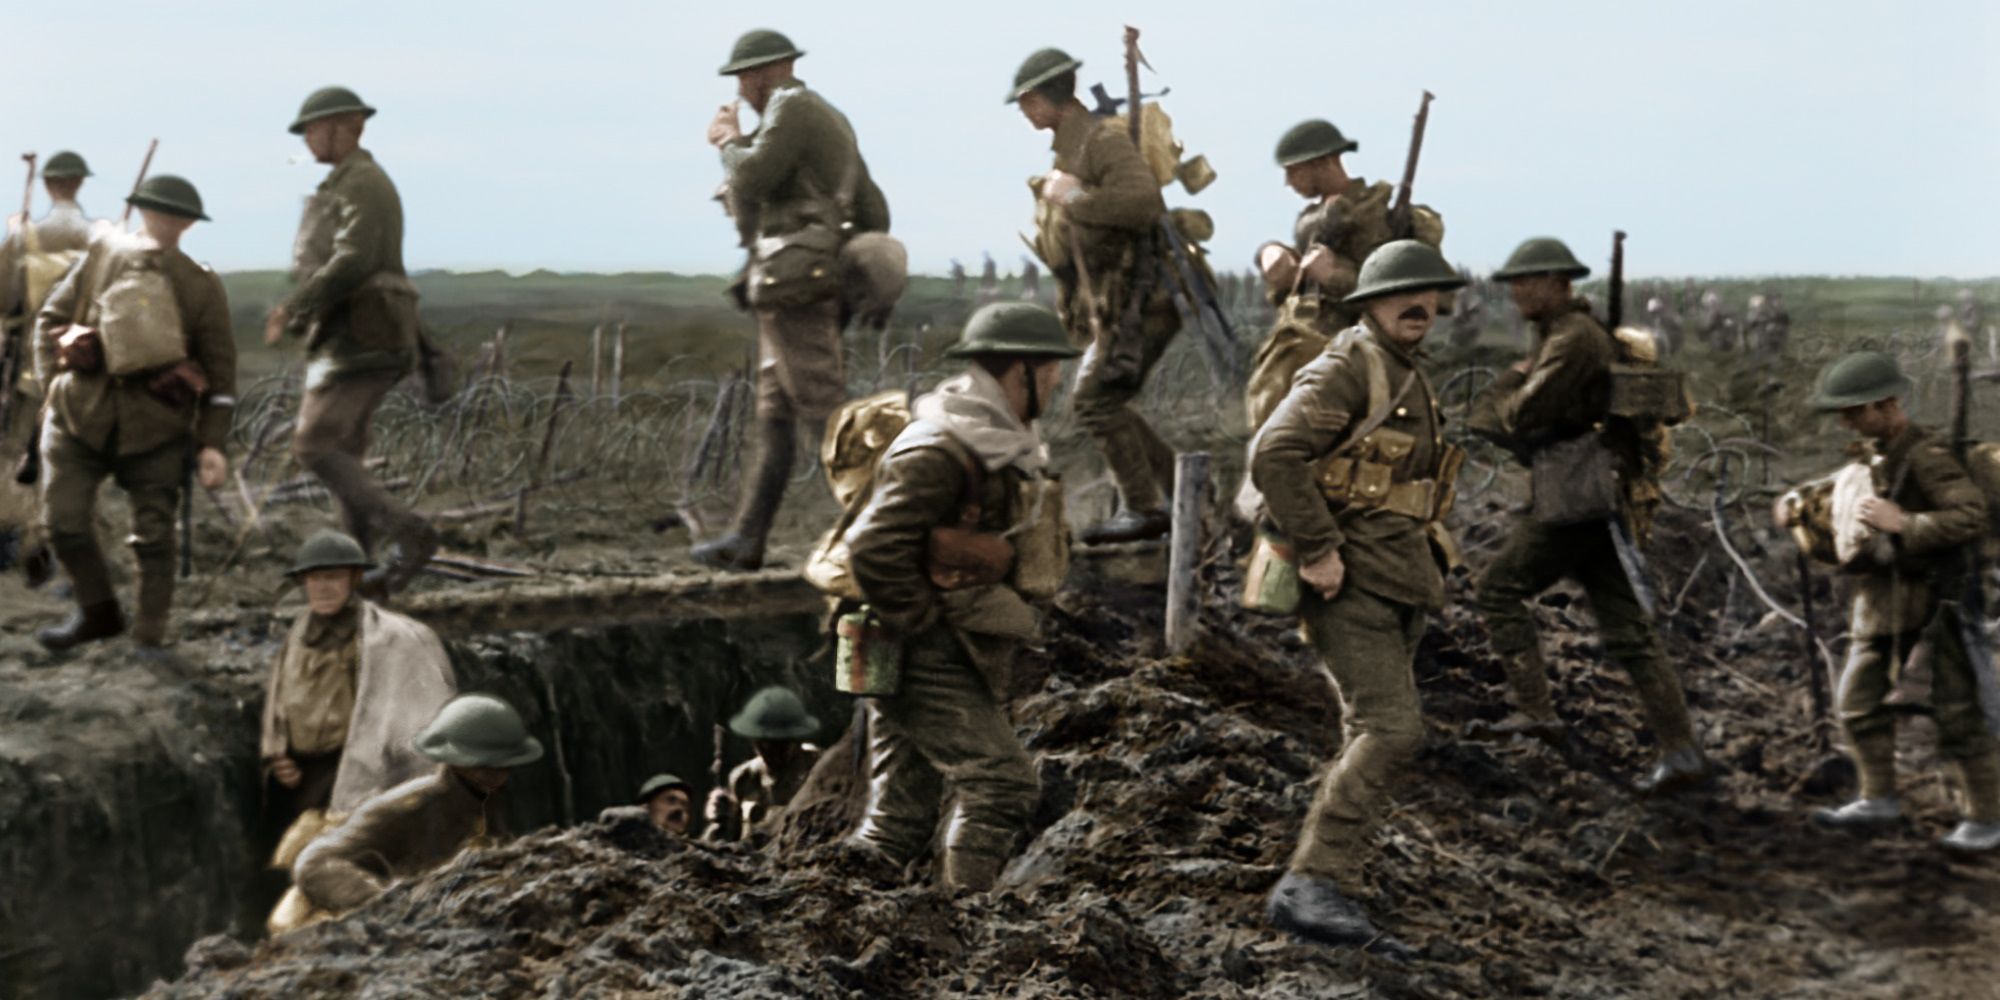 Soldats de la Première Guerre mondiale dans Ils ne vieilliront pas - 2018